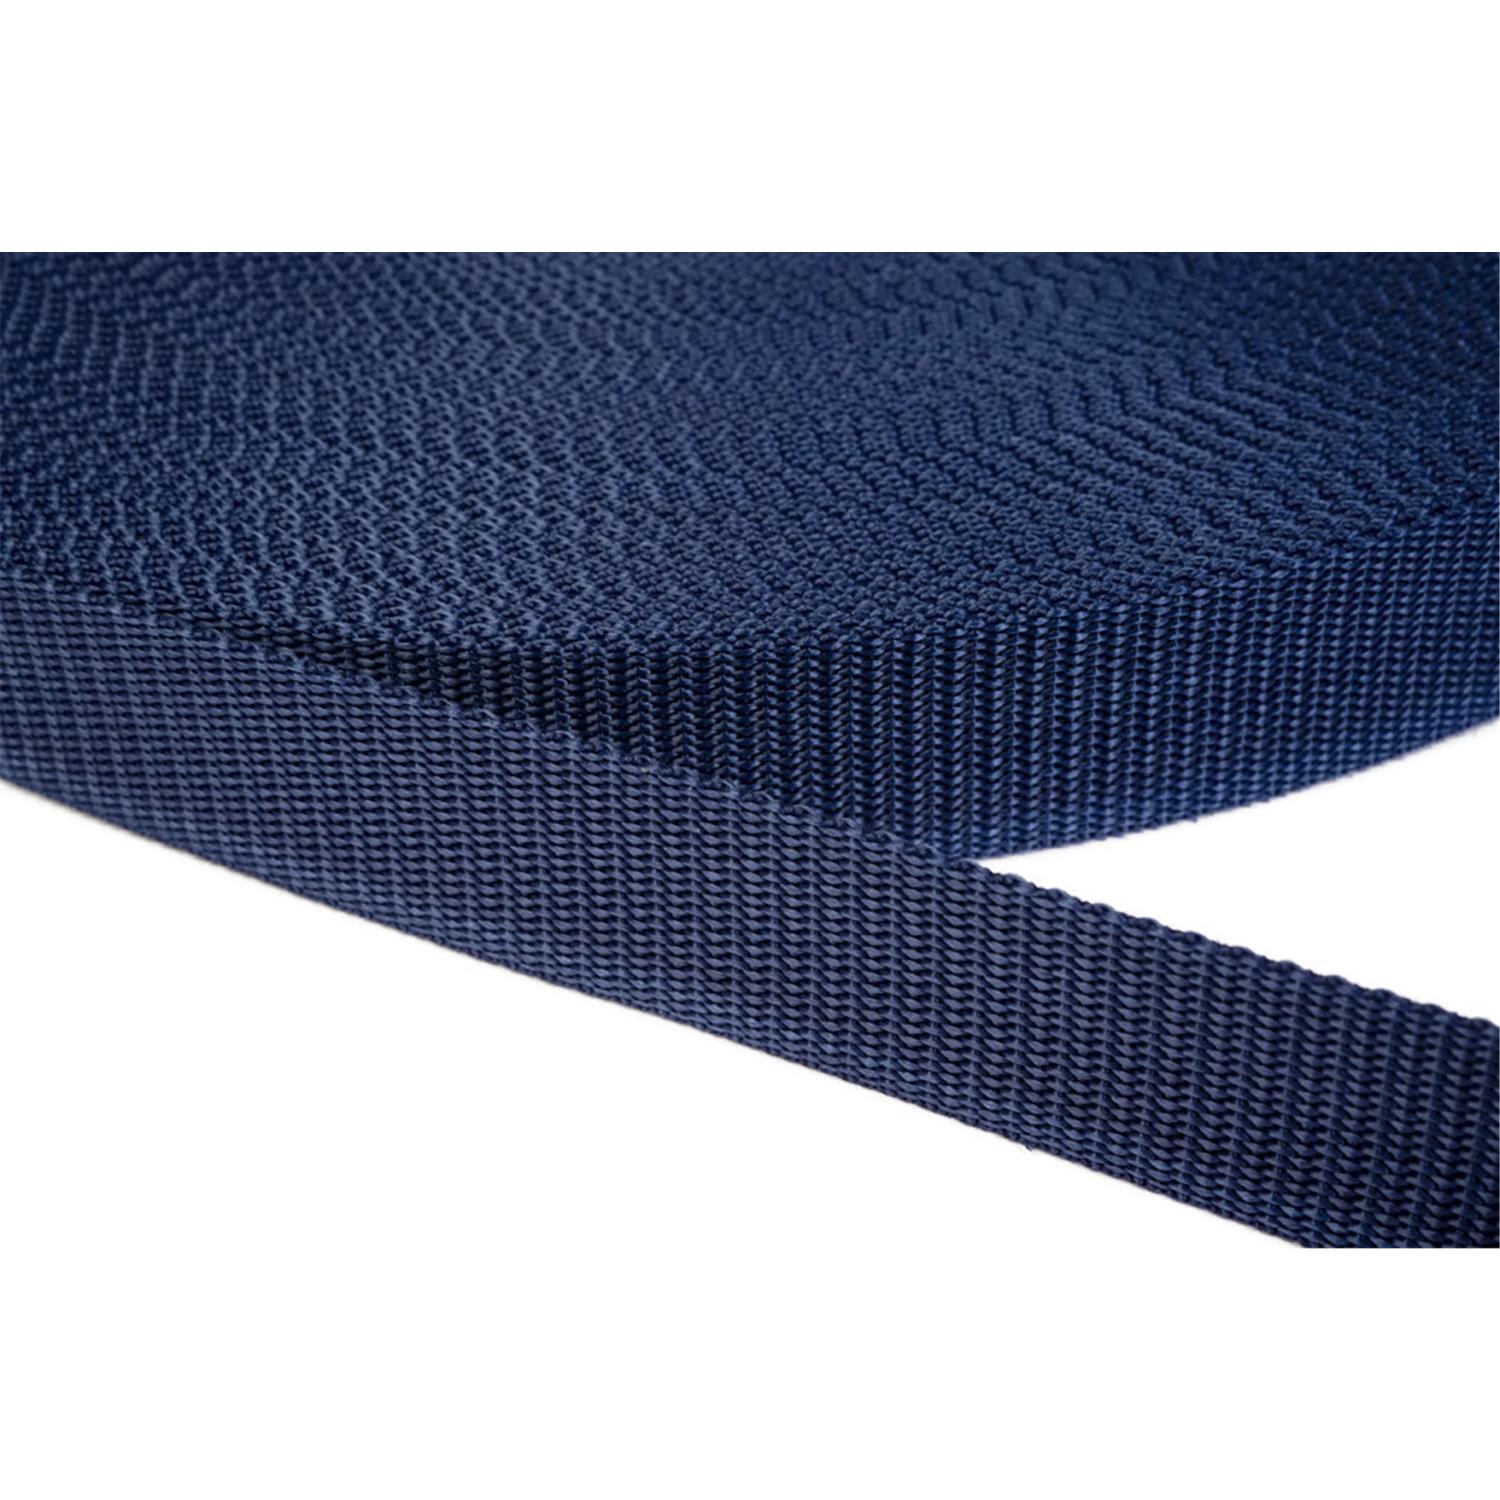 Gurtband 50mm breit aus Polypropylen in 41 Farben 27 - dunkelblau 12 Meter